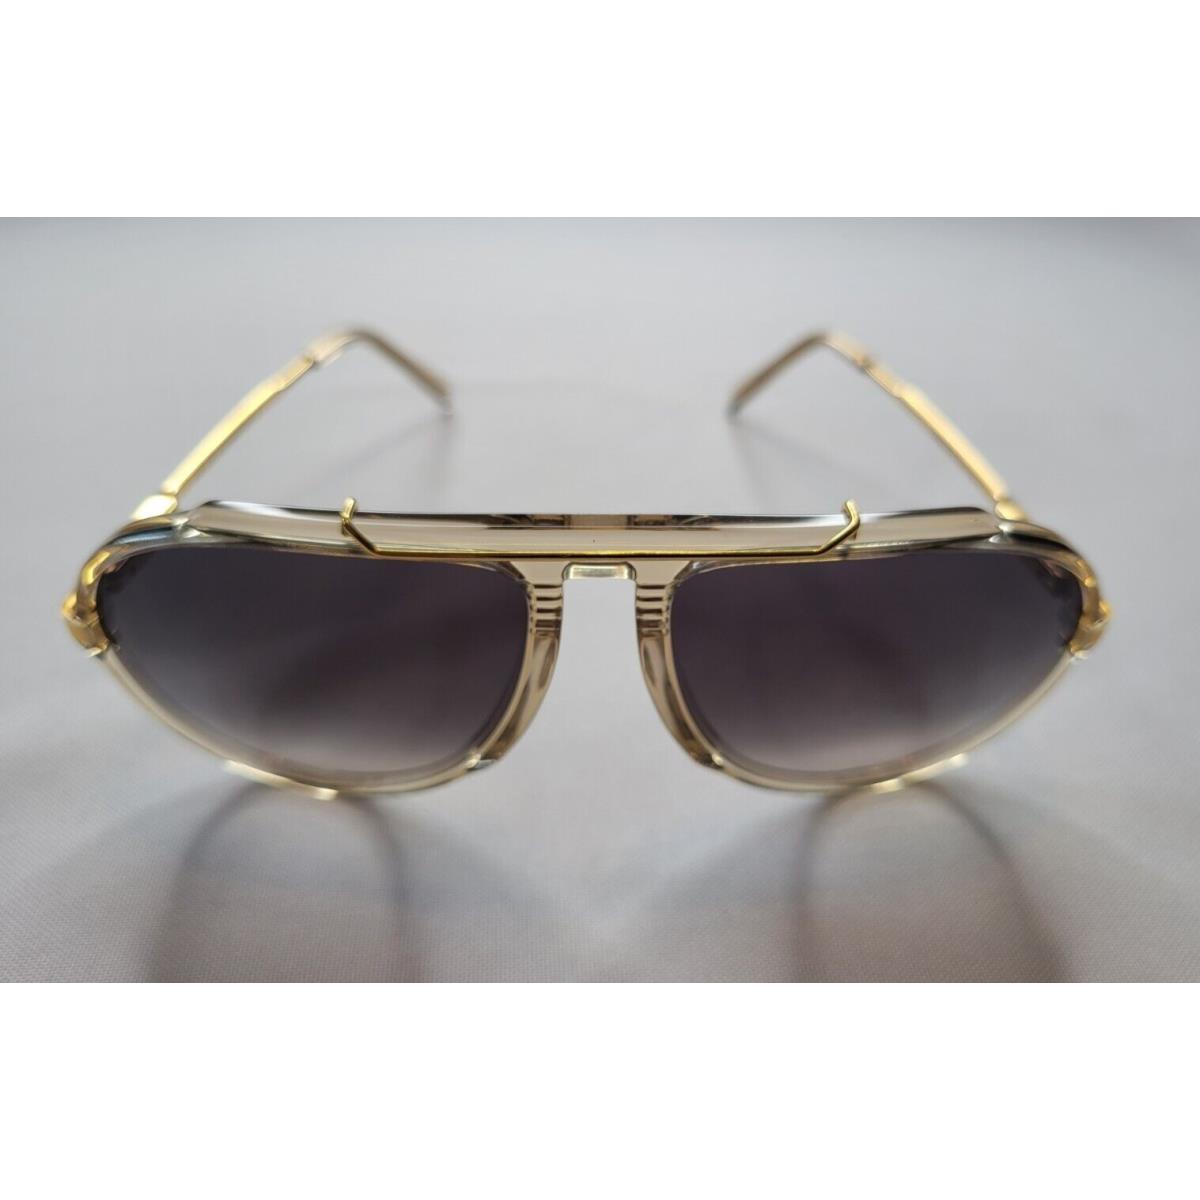 Celine sunglasses  - Brown/Gold Frame, Gray Lens 1